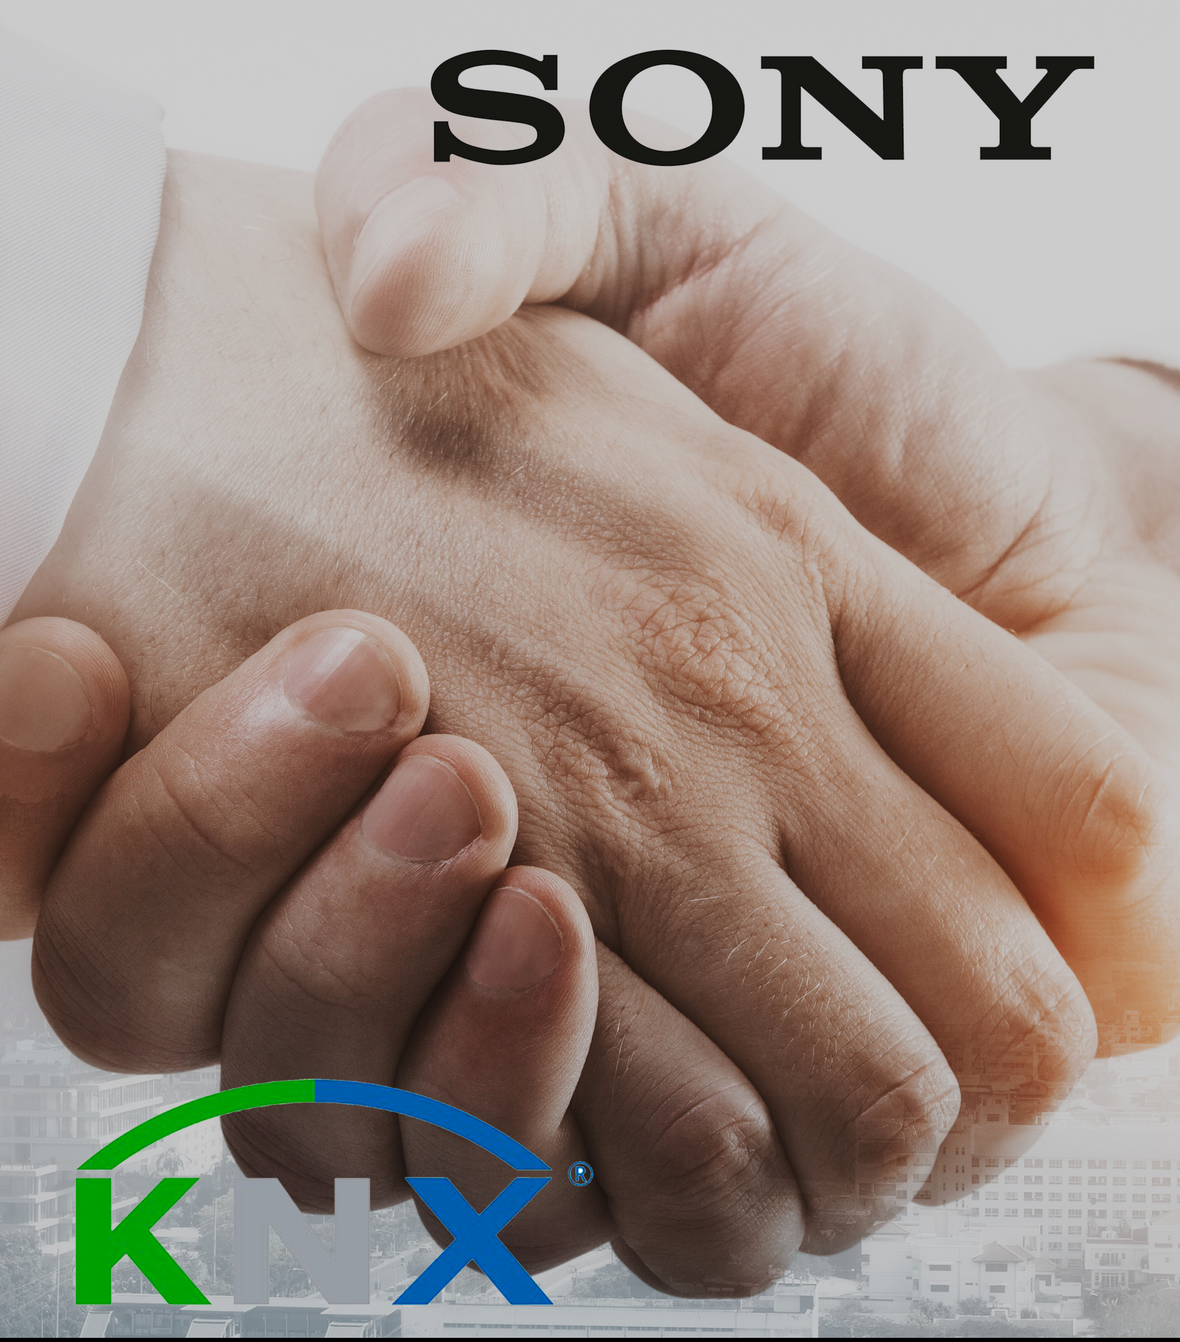 KNX dà il benvenuto a sony come suo 500° membro: questa partnership evidenzia la crescente popolarità di KNX IoT